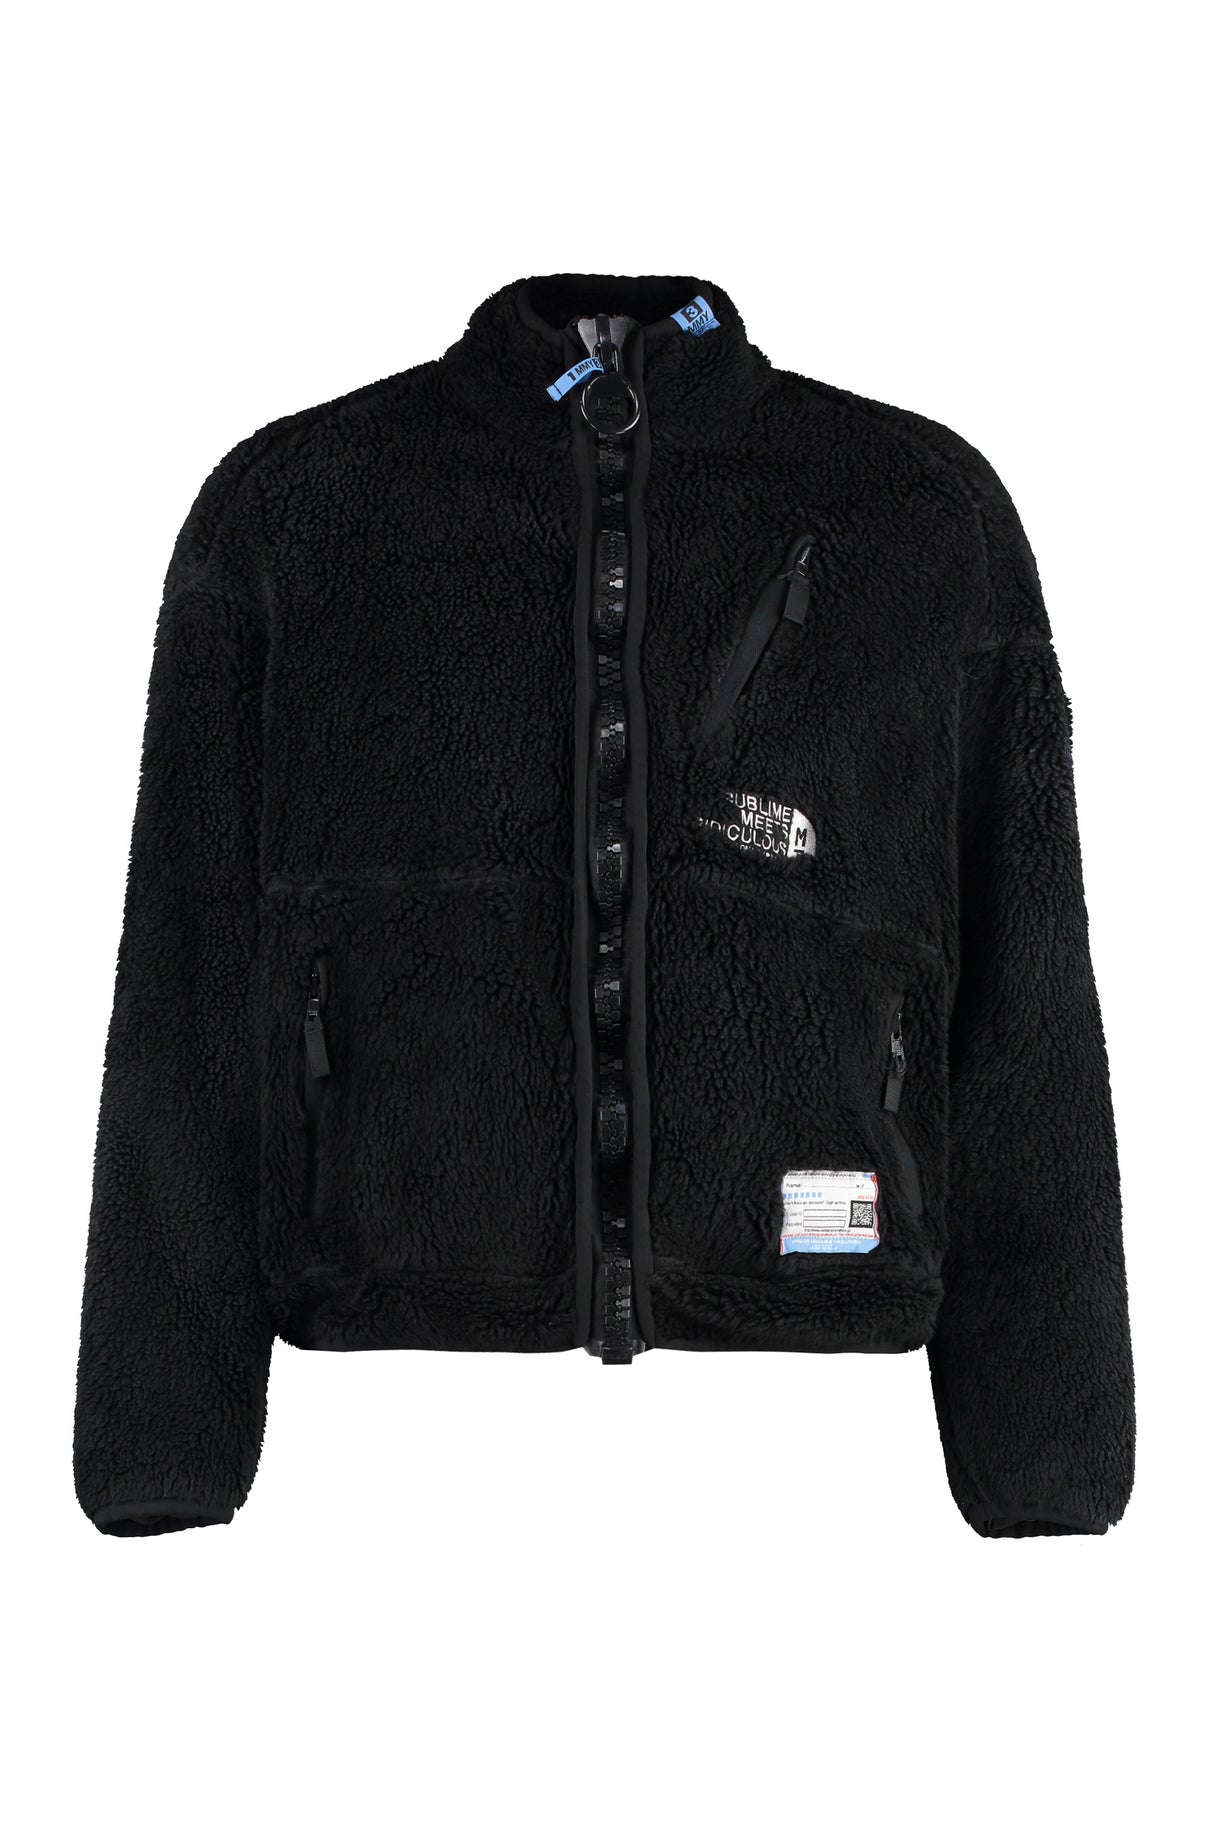 MAISON MIHARA YASUHIRO	 Black Fleece Bomber Jacket for Men - FW23 Collection